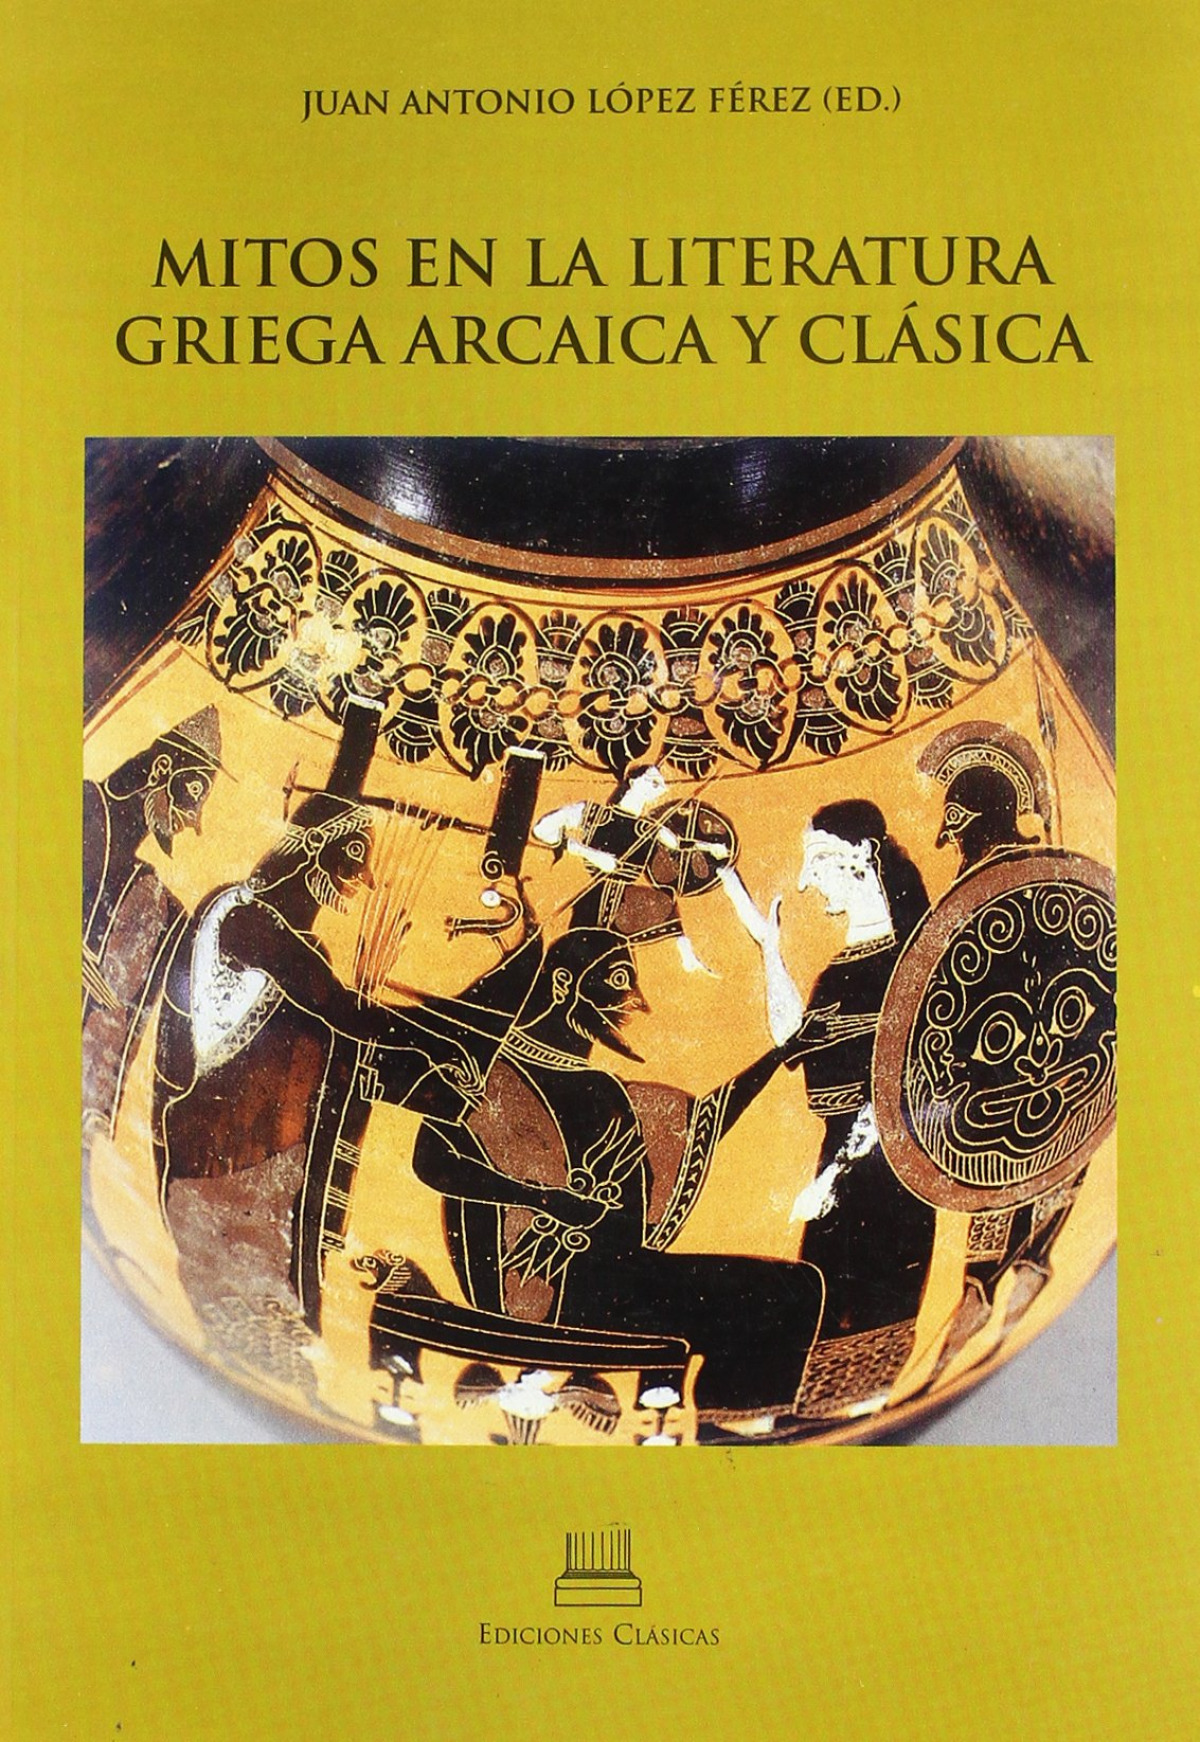 Mitos en la lit.griega arcaica y clasic - Lopez Ferez, Juan Antonio (ed.)